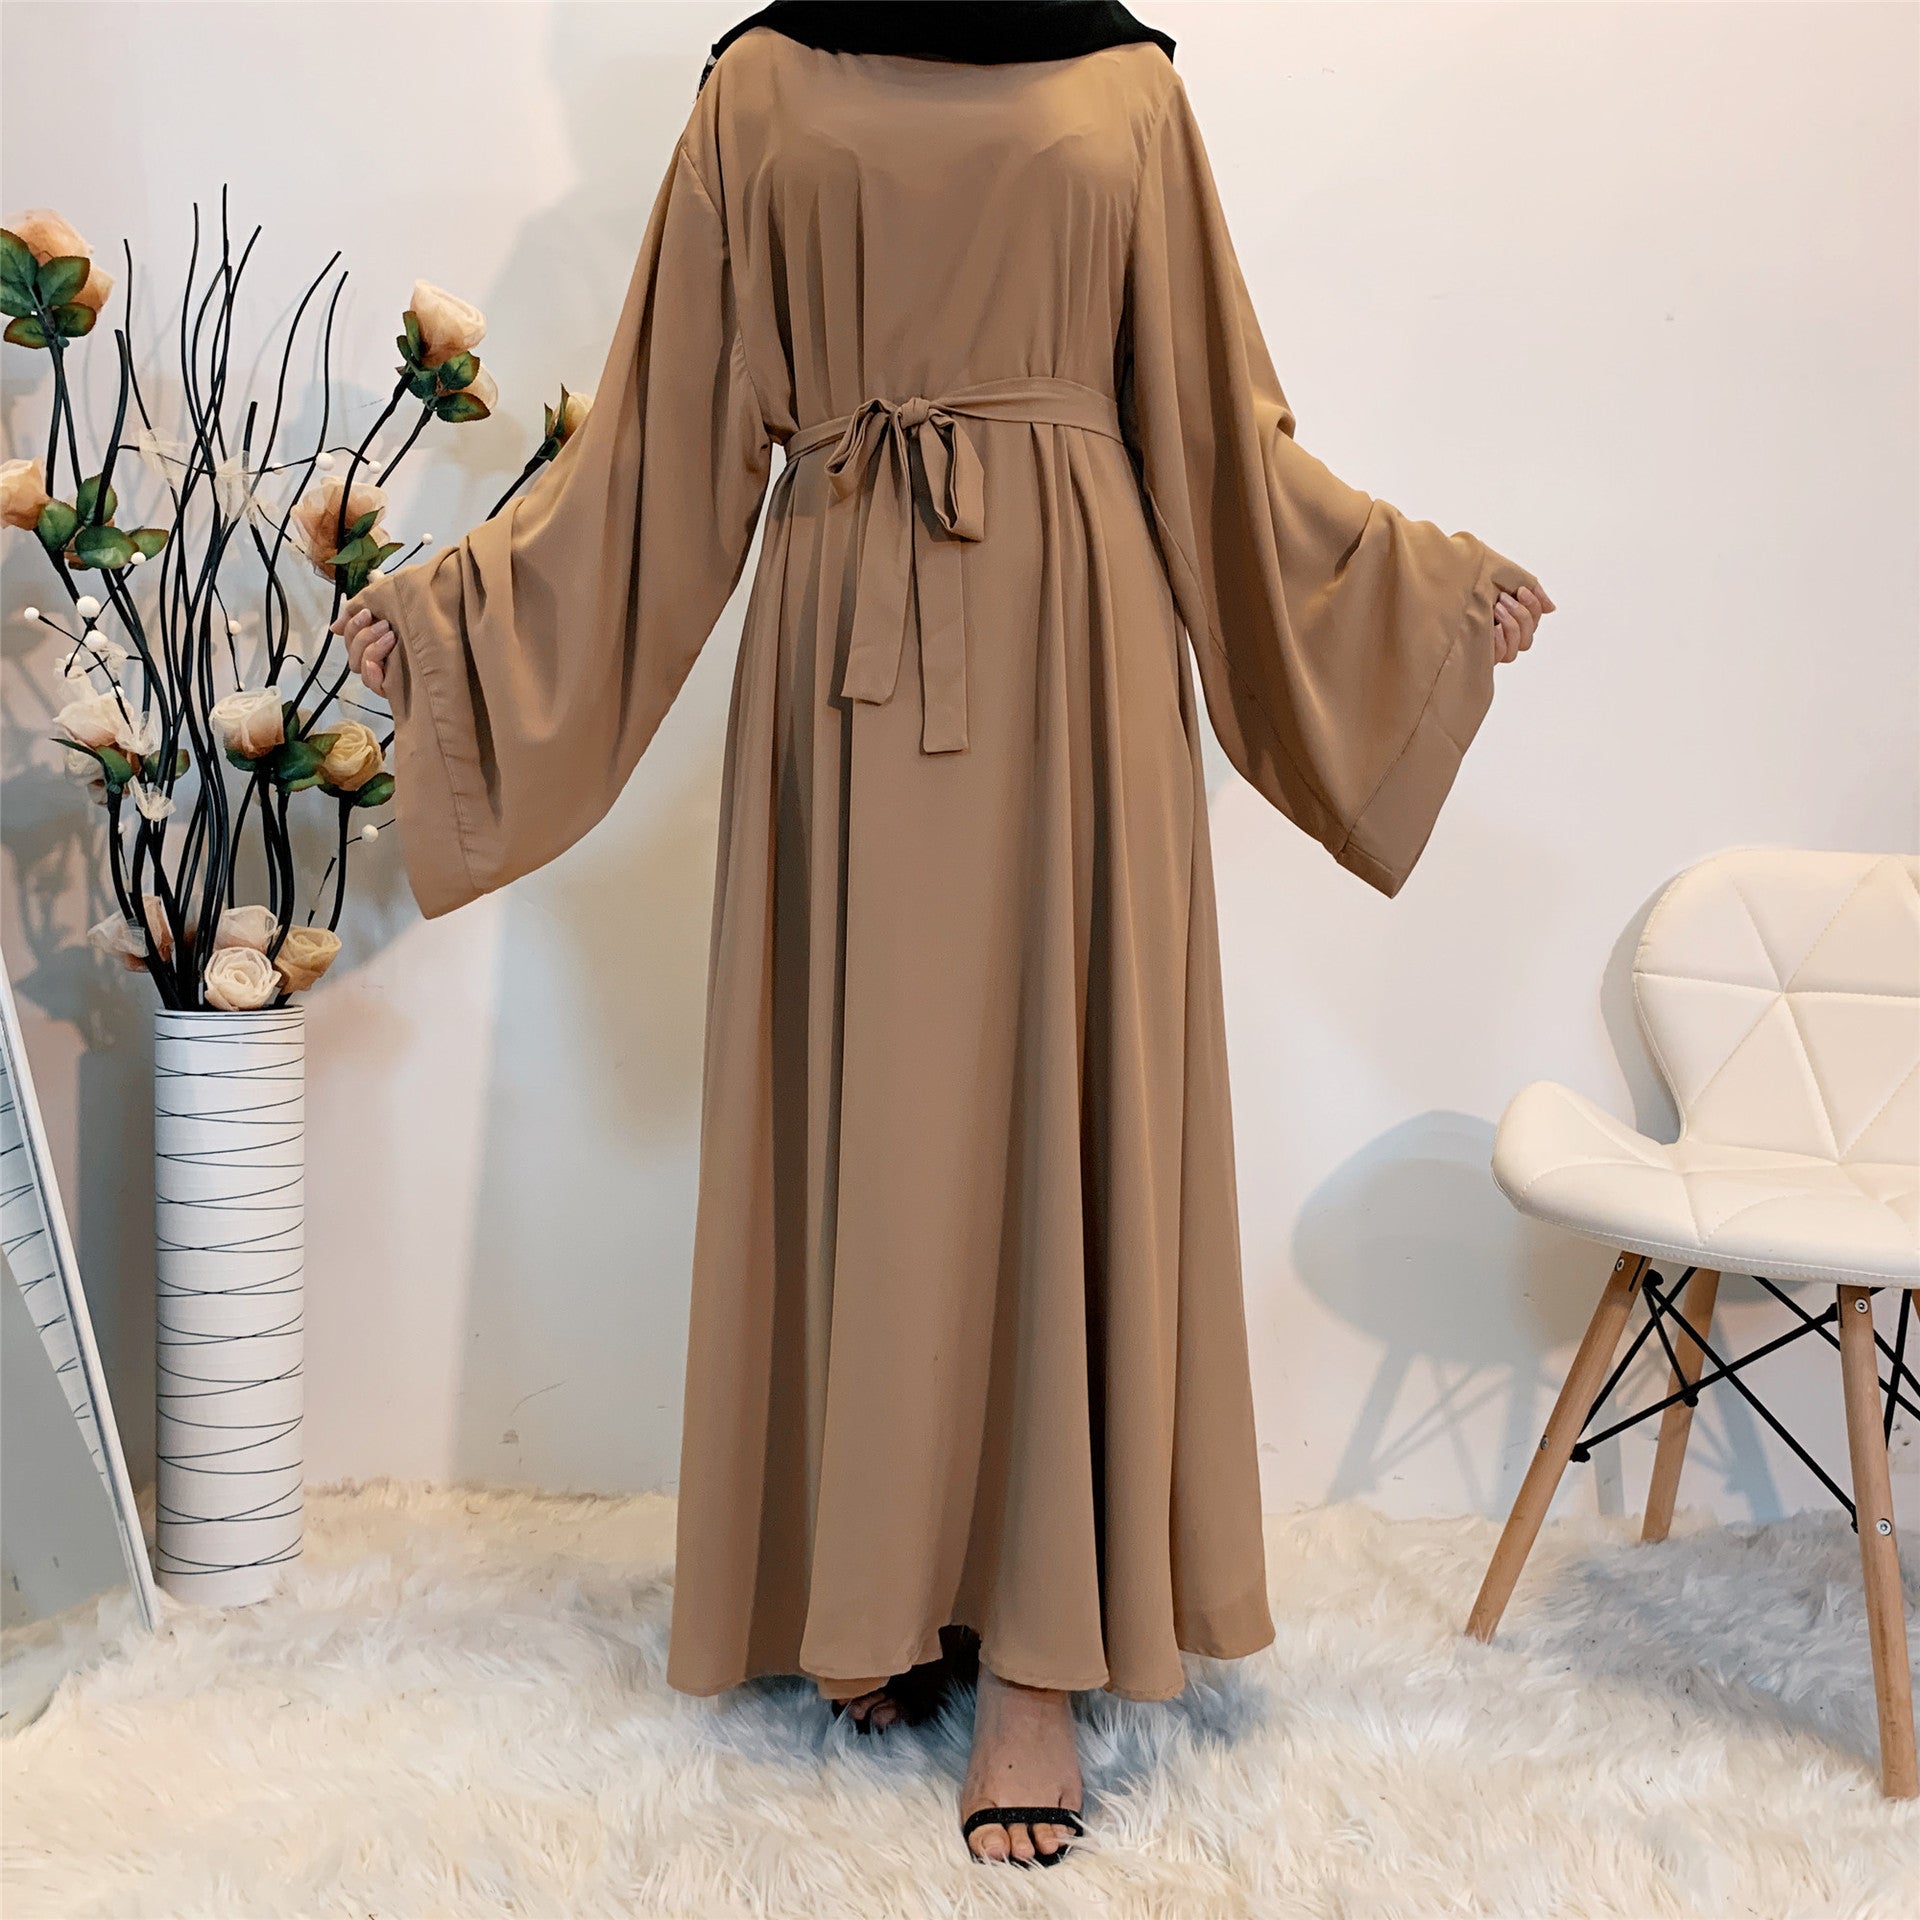 Solid Color Plus Size Lace-up Muslim Dress